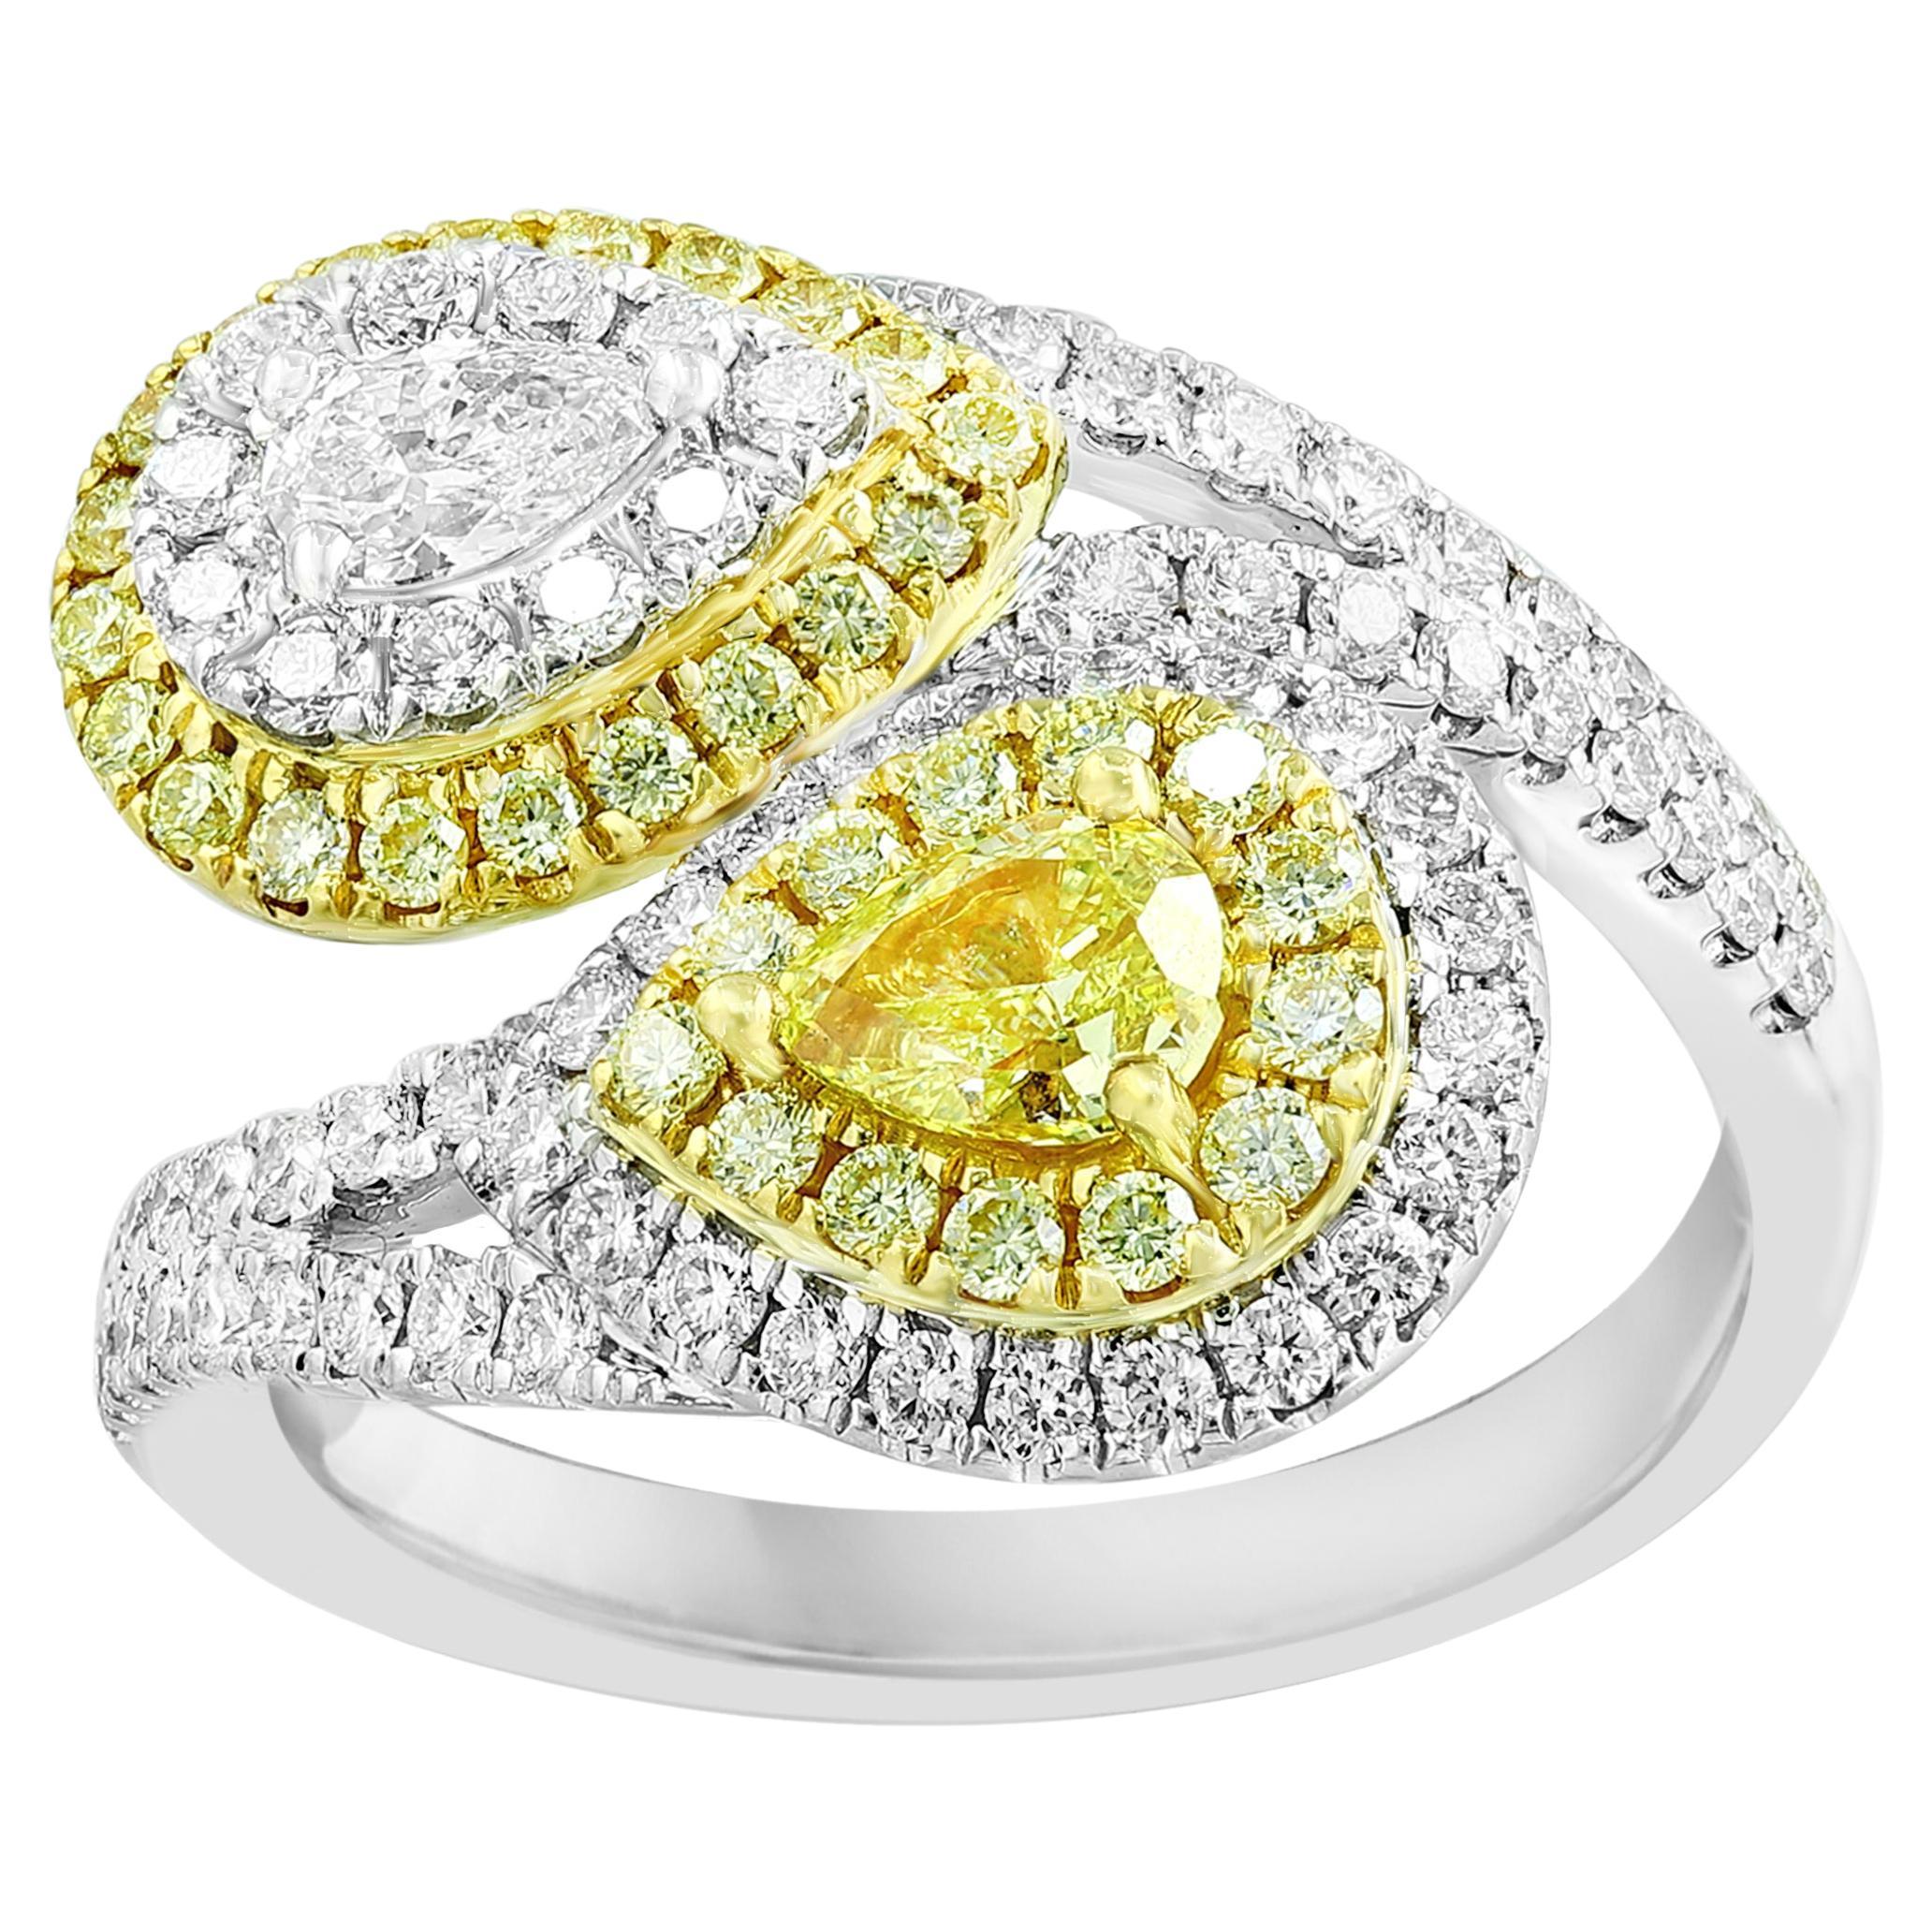 Bague Toi et Moi en or mixte 18 carats, diamant blanc et jaune